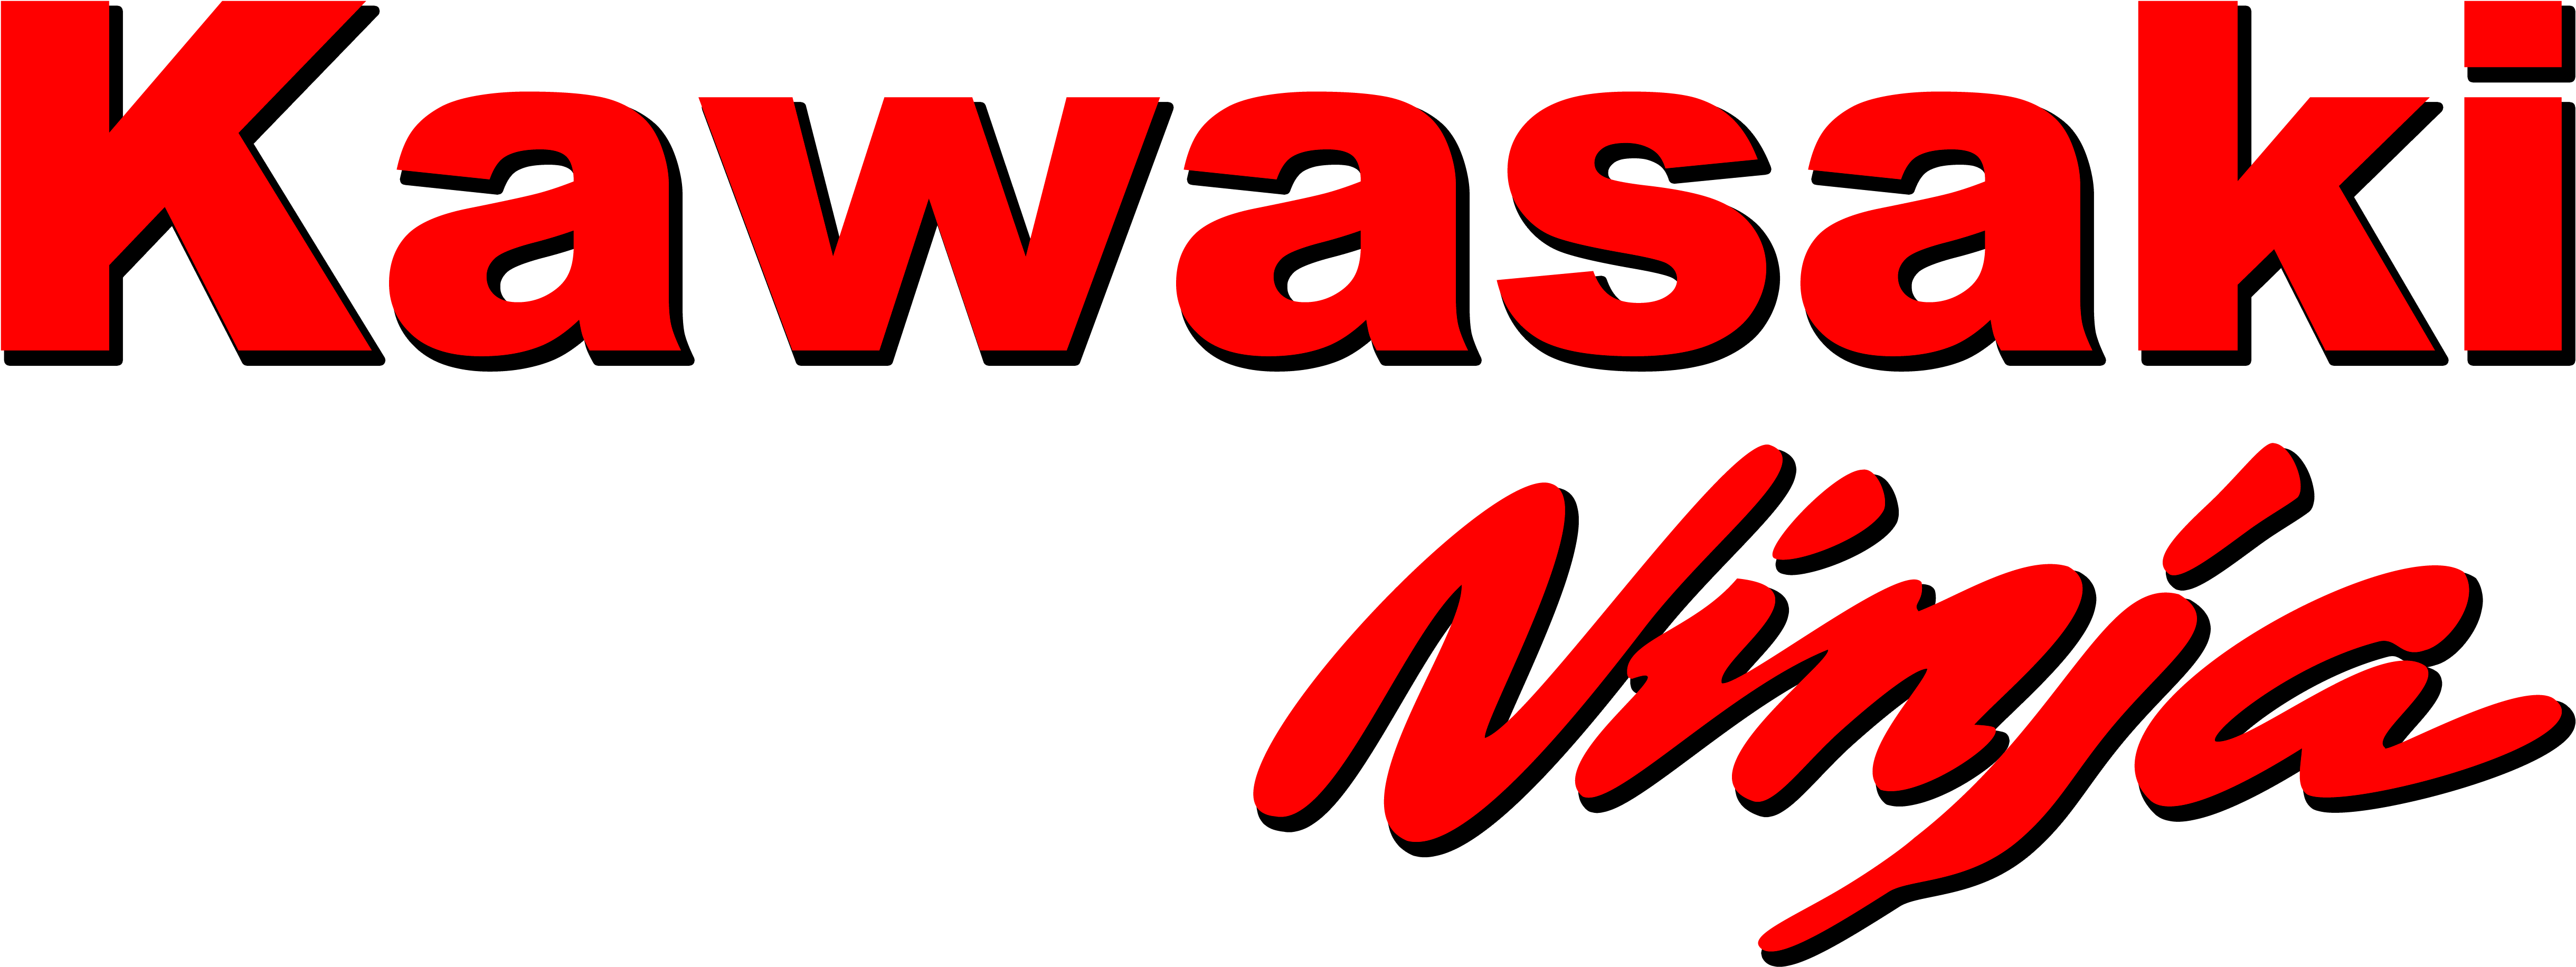 Kawasaki-logo Transparant Beeld